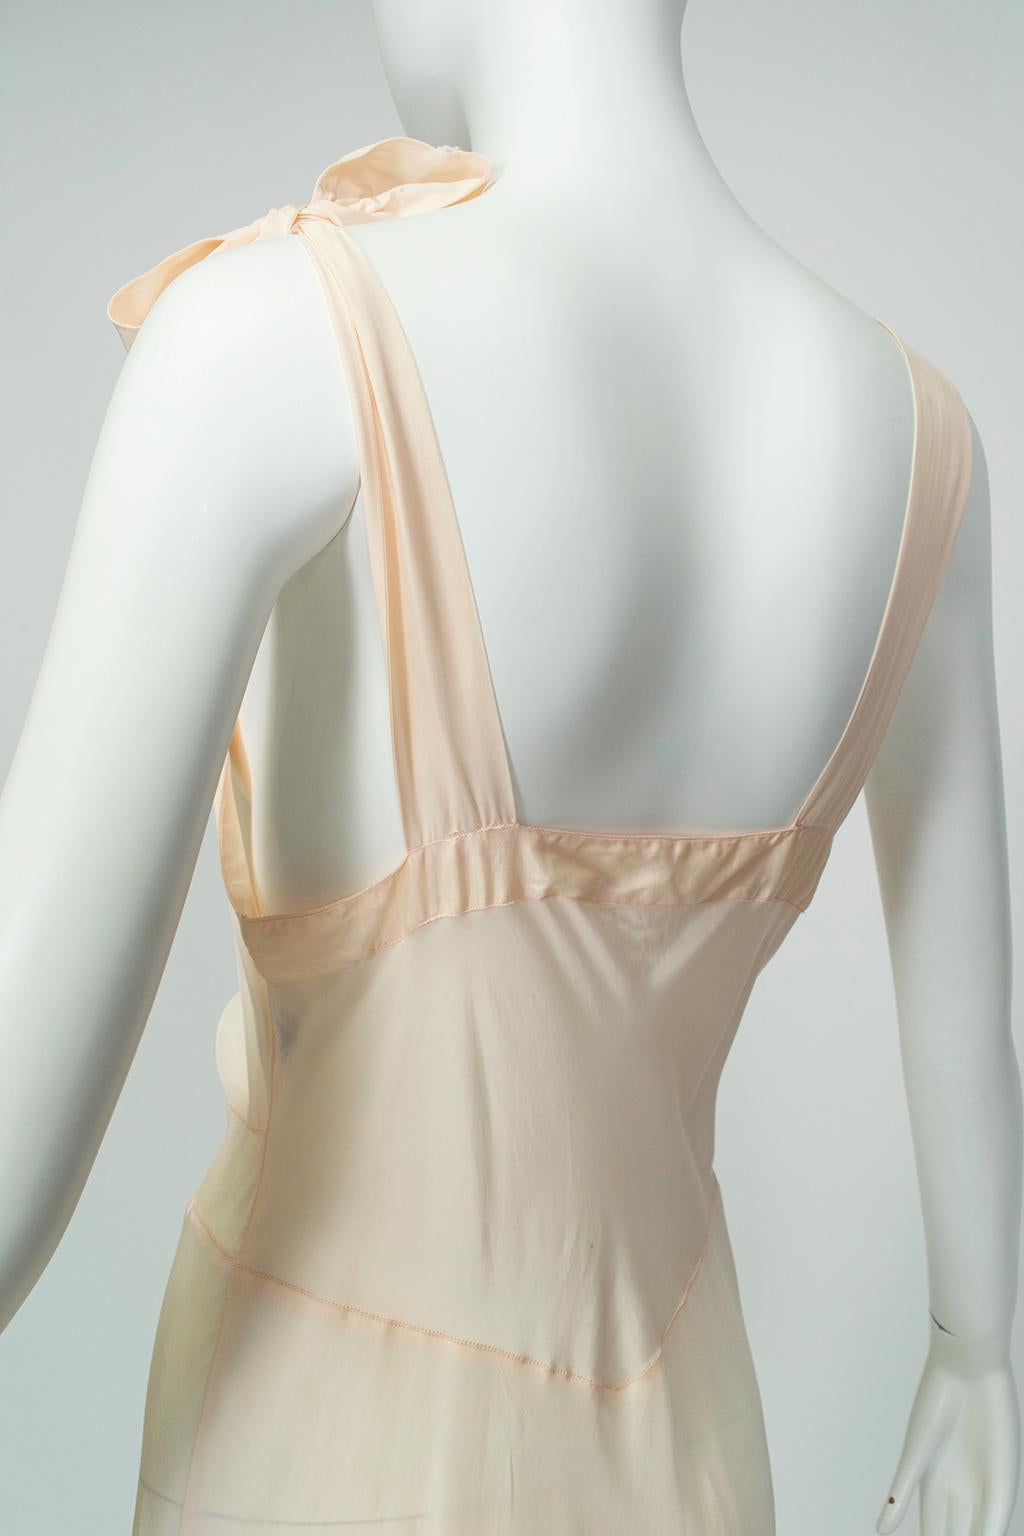 Beige Baby Pink Bias Tie-Shoulder Nightgown with Rosebud Appliqués – M, 1930s